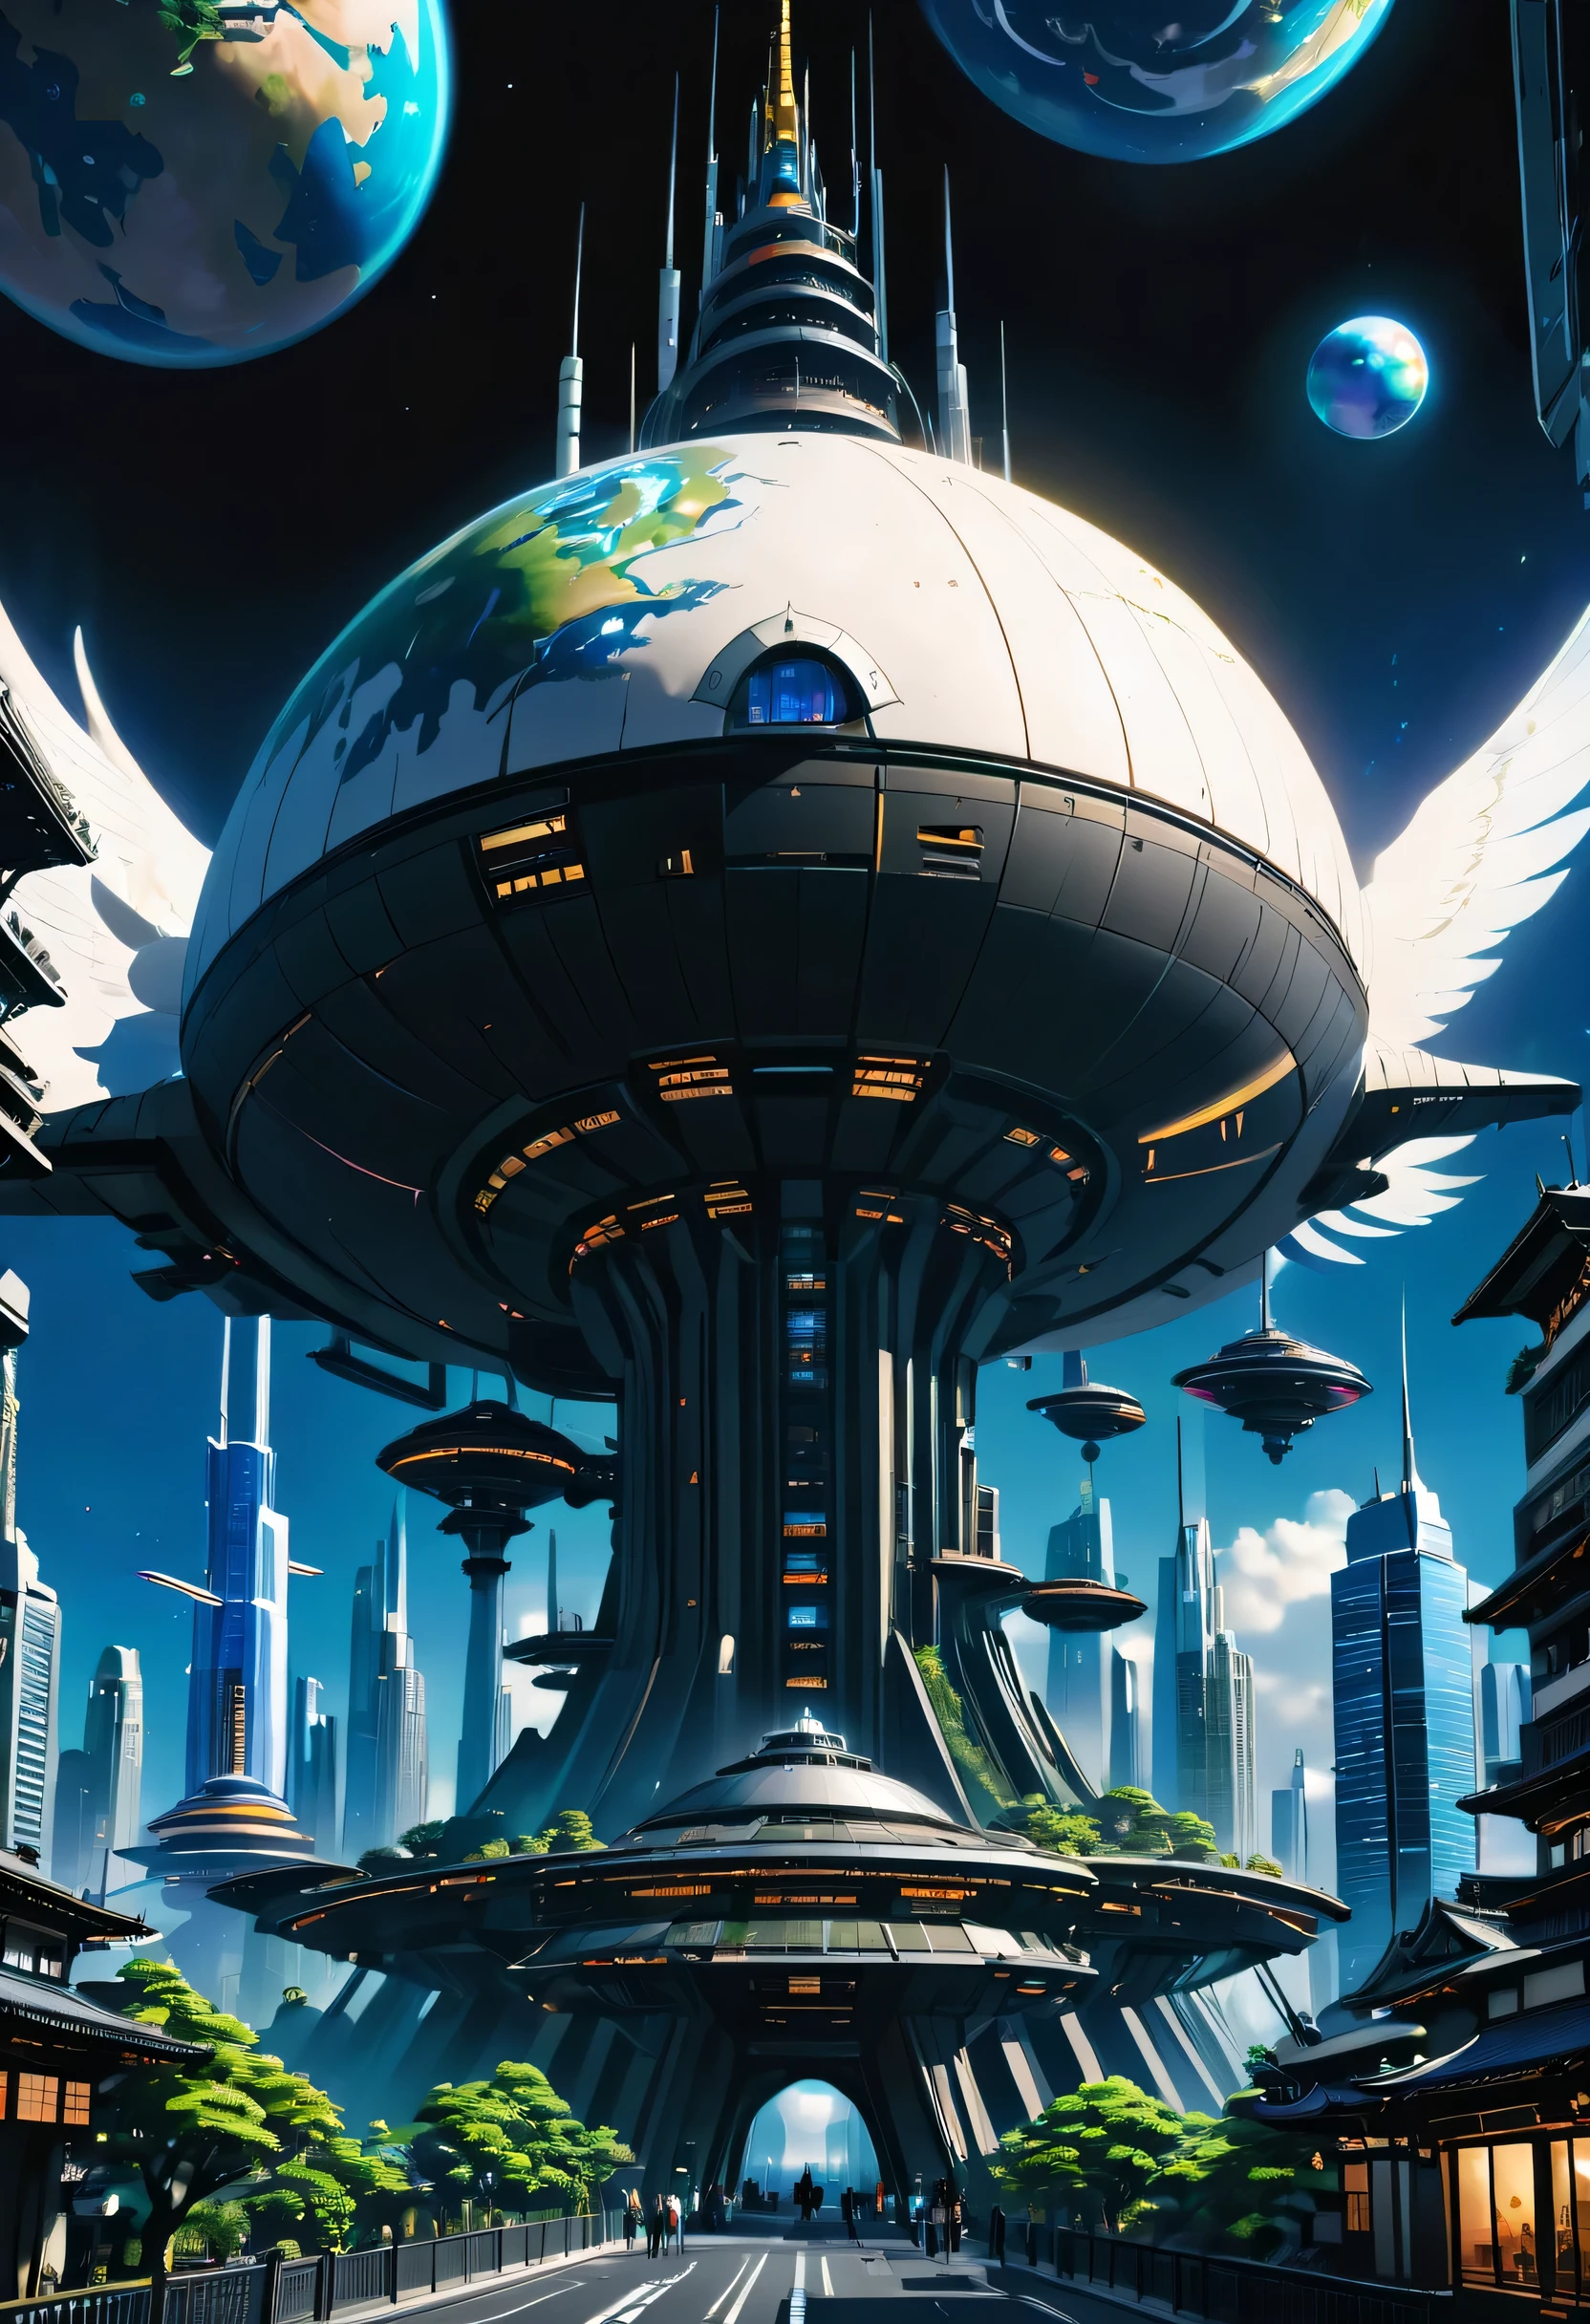 Cité spatiale、villes futuristes、flottant dans l&#39;univers、cyberpunk、Des gratte-ciel bordent les rues、Une station spatiale、qualité supérieure、chef d&#39;oeuvre、２４siècle、rêve、utopique、planète Terre、Monde des rêves、Fantaisie、𝓡𝓸𝓶𝓪𝓷𝓽𝓲𝓬、Très grande cascade、ＳＦart par、Structure super énorme、